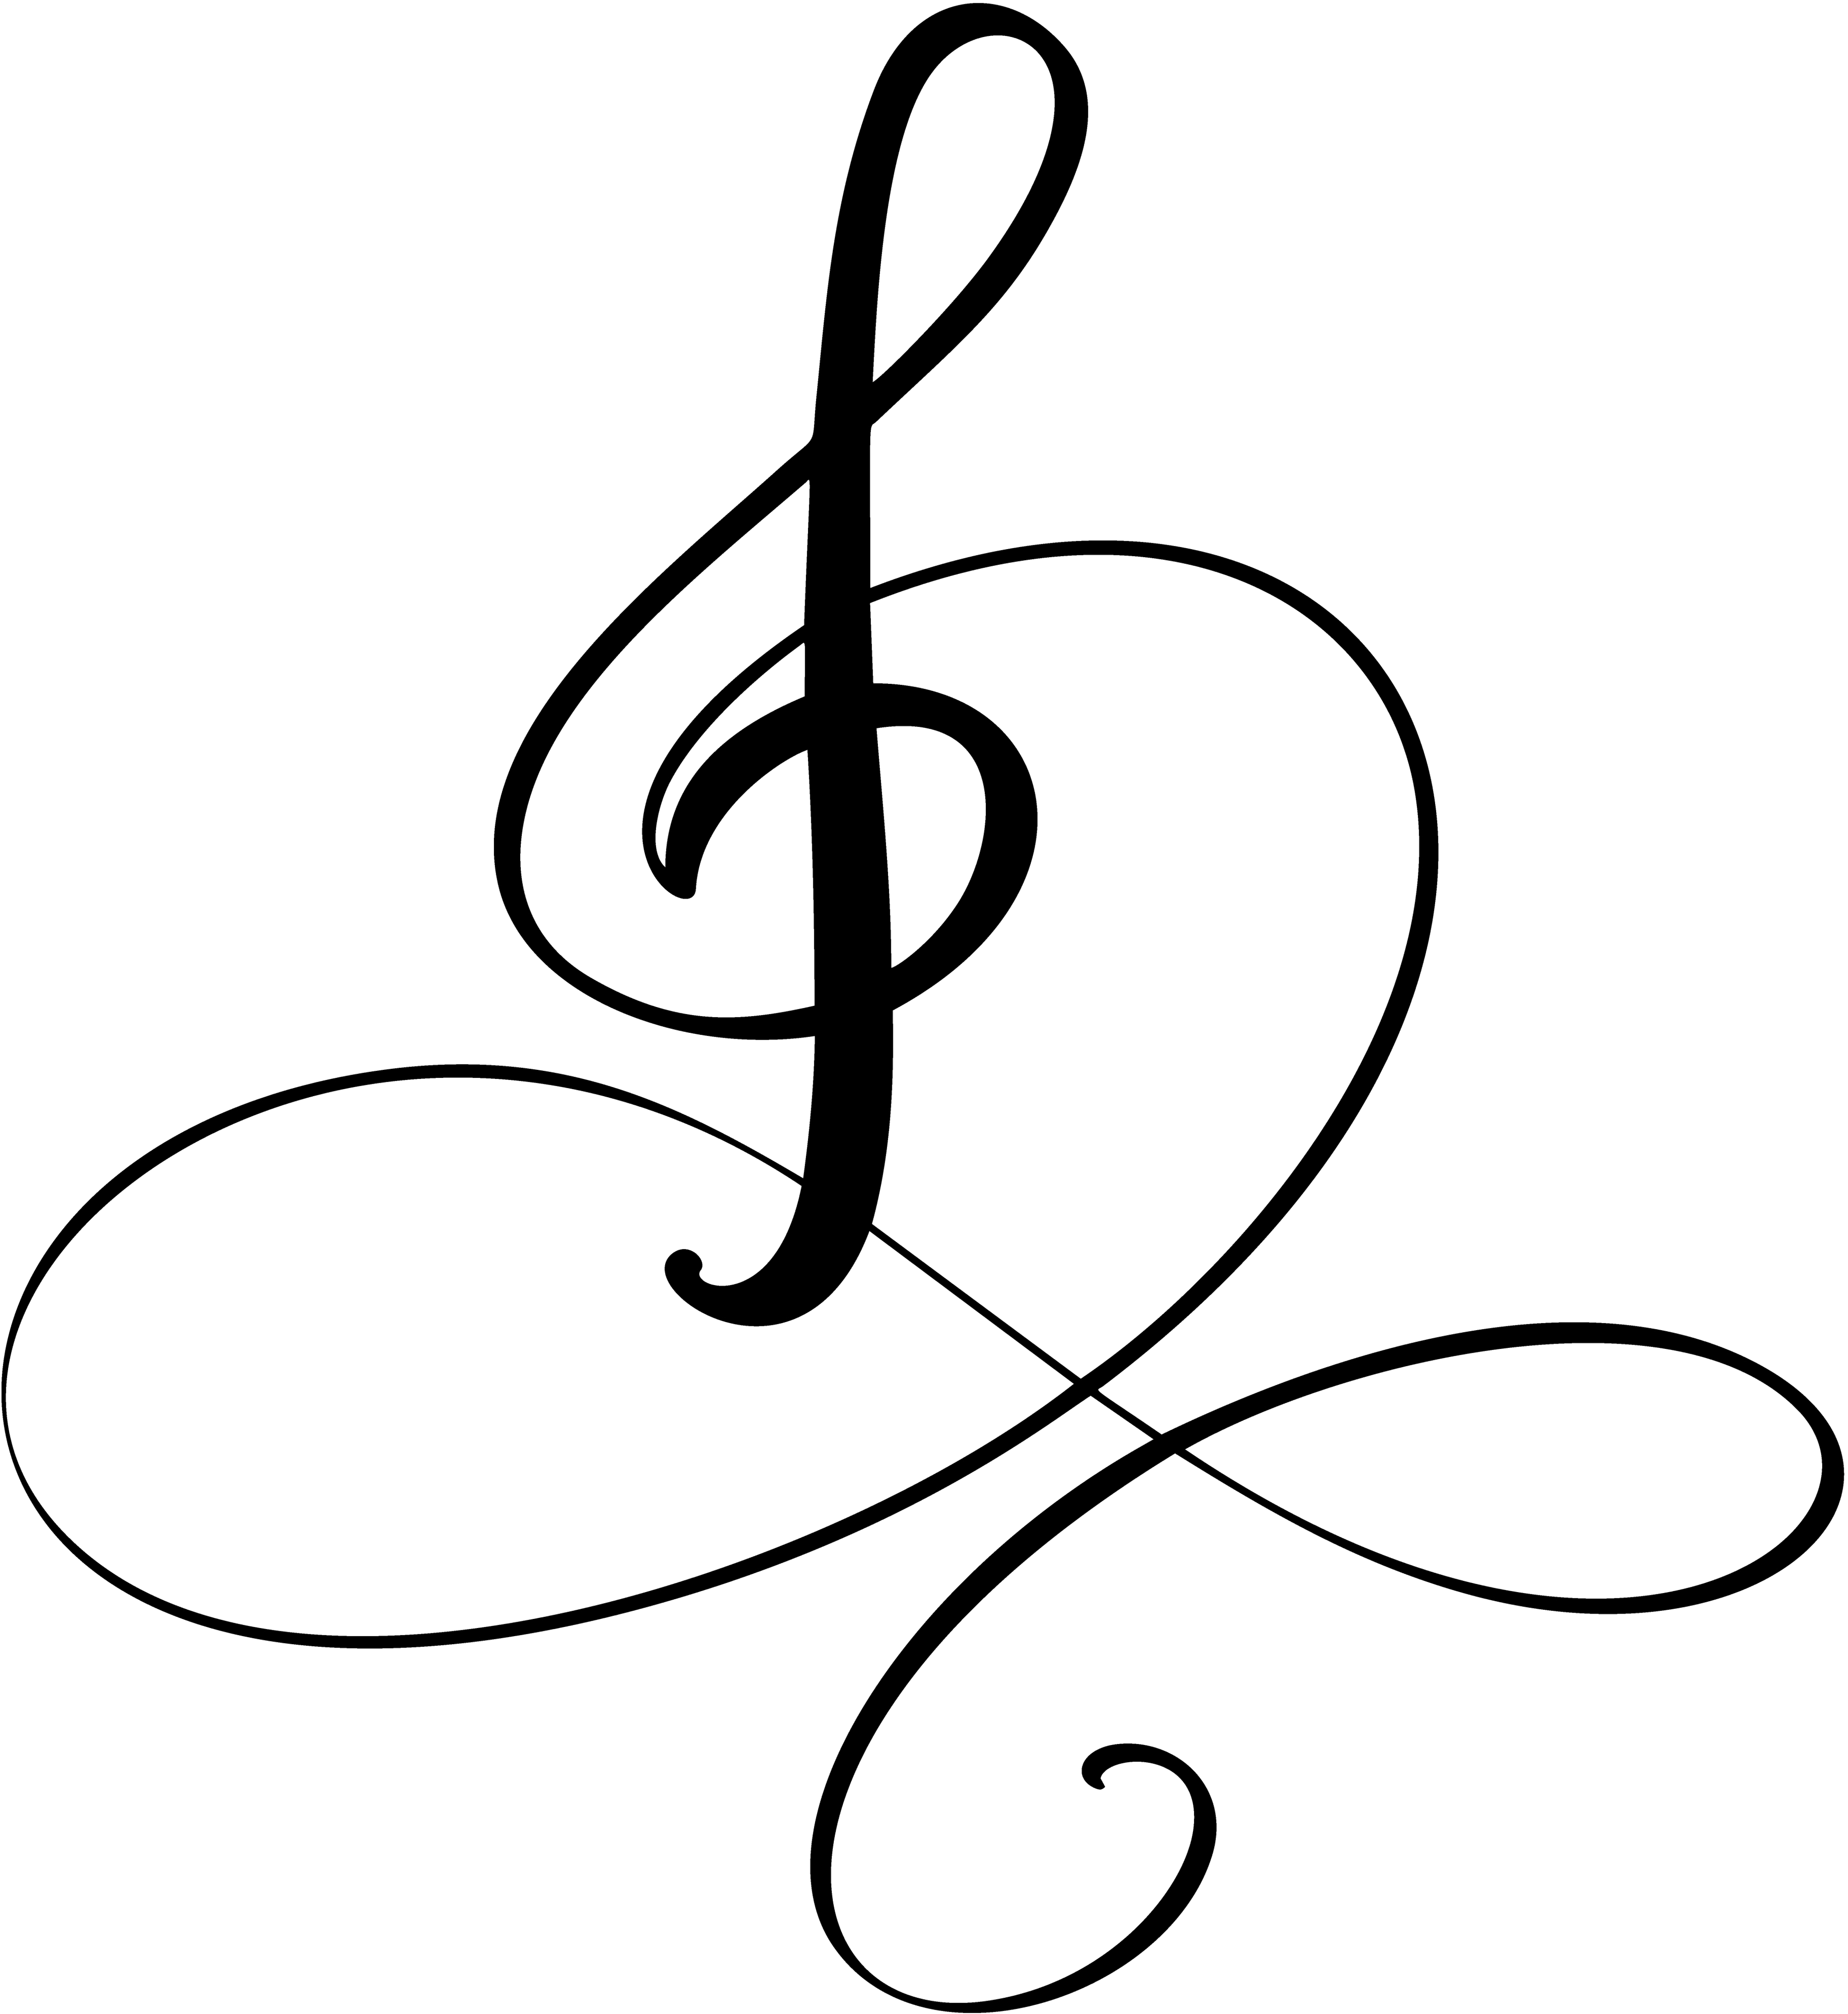 Treble and Bass clef tattoo | Music tattoo designs, Piano tattoo, Treble  clef tattoo